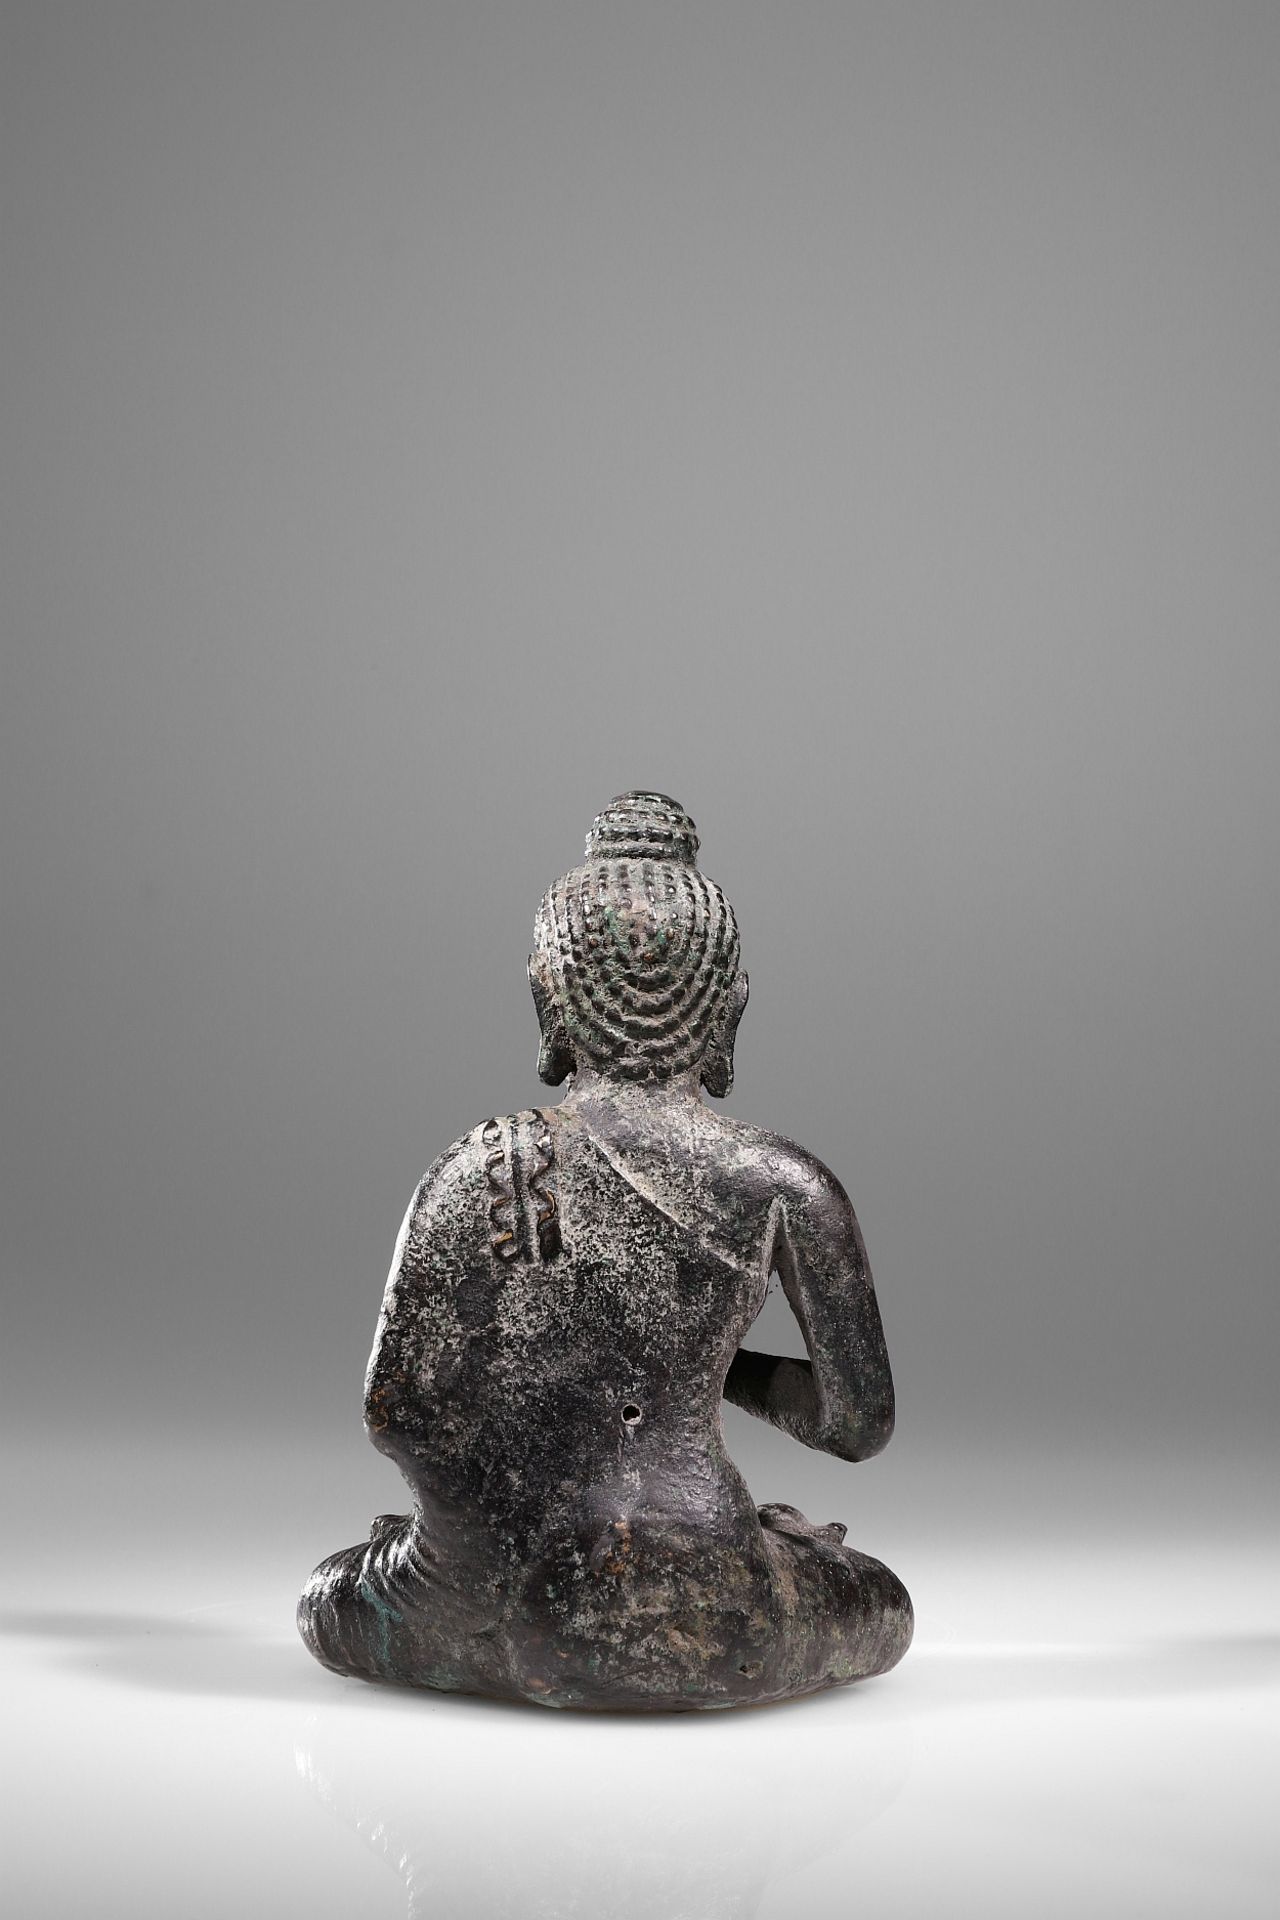 BUDDHA SHOWING THE DHARMACHAKRA MUDRA - Image 4 of 7